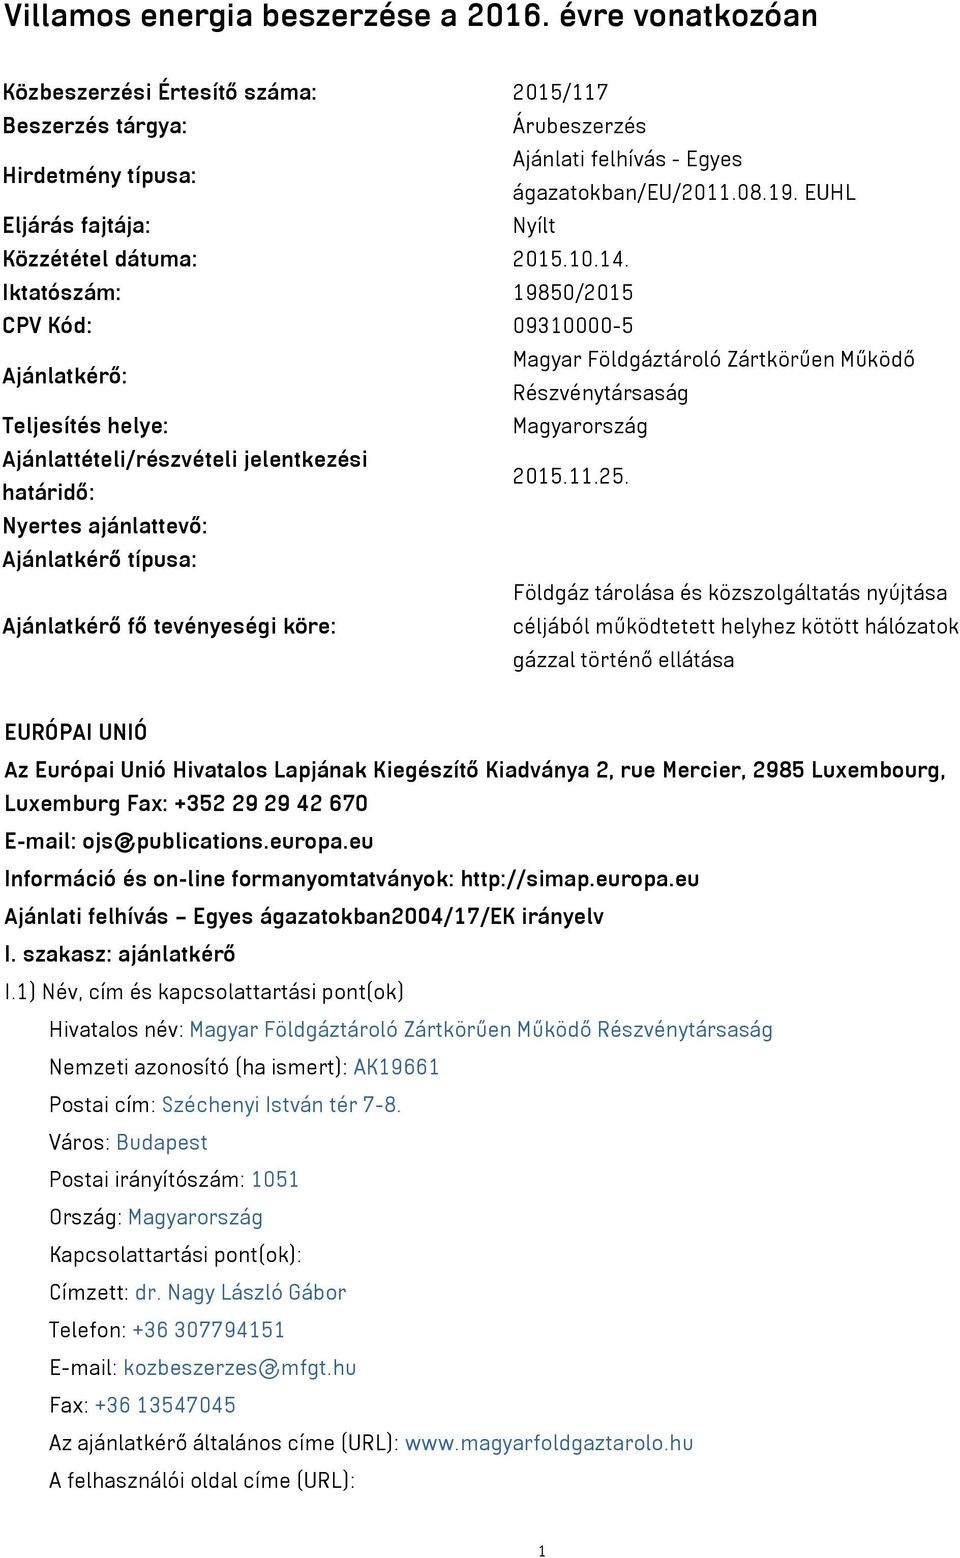 Iktatószám: 19850/2015 CPV Kód: 09310000-5 Ajánlatkérő: Magyar Földgáztároló Zártkörűen Működő Részvénytársaság Teljesítés helye: Magyarország Ajánlattételi/részvételi jelentkezési határidő: 2015.11.